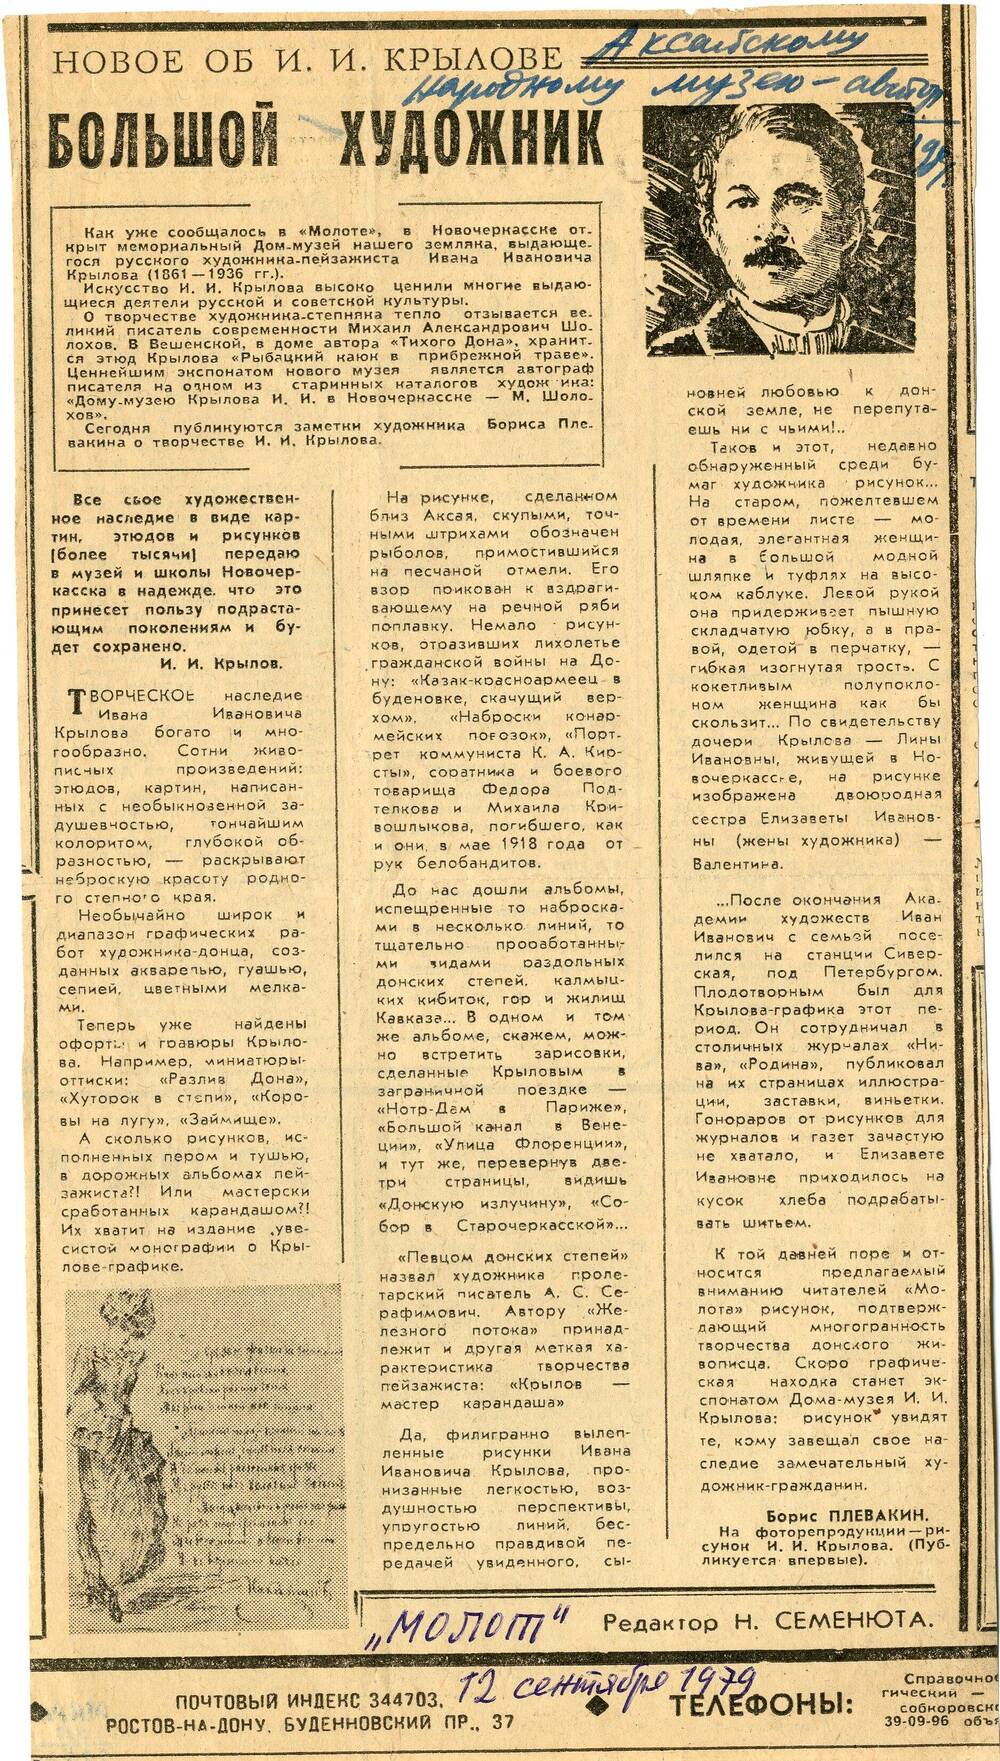 Газета Молот от 12 сентября 1979 г. (фрагмент)